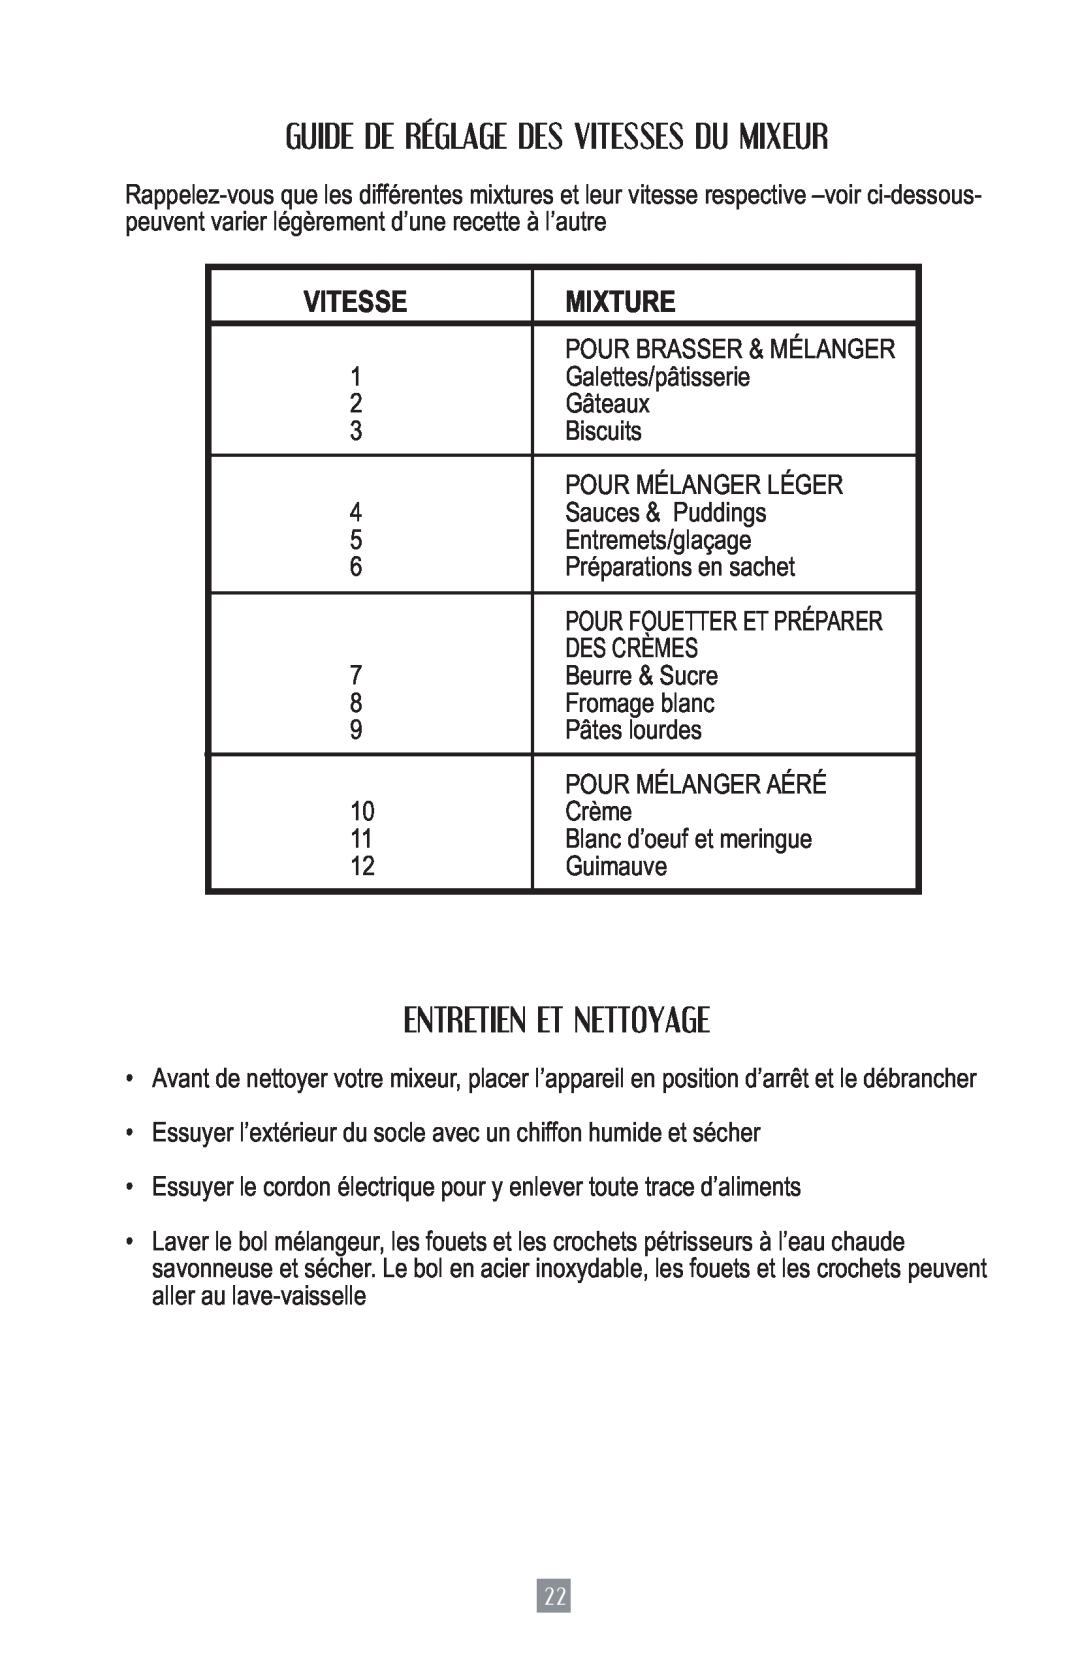 Oster 2700 instruction manual Guide De Réglage Des Vitesses Du Mixeur, Entretien Et Nettoyage, Mixture 